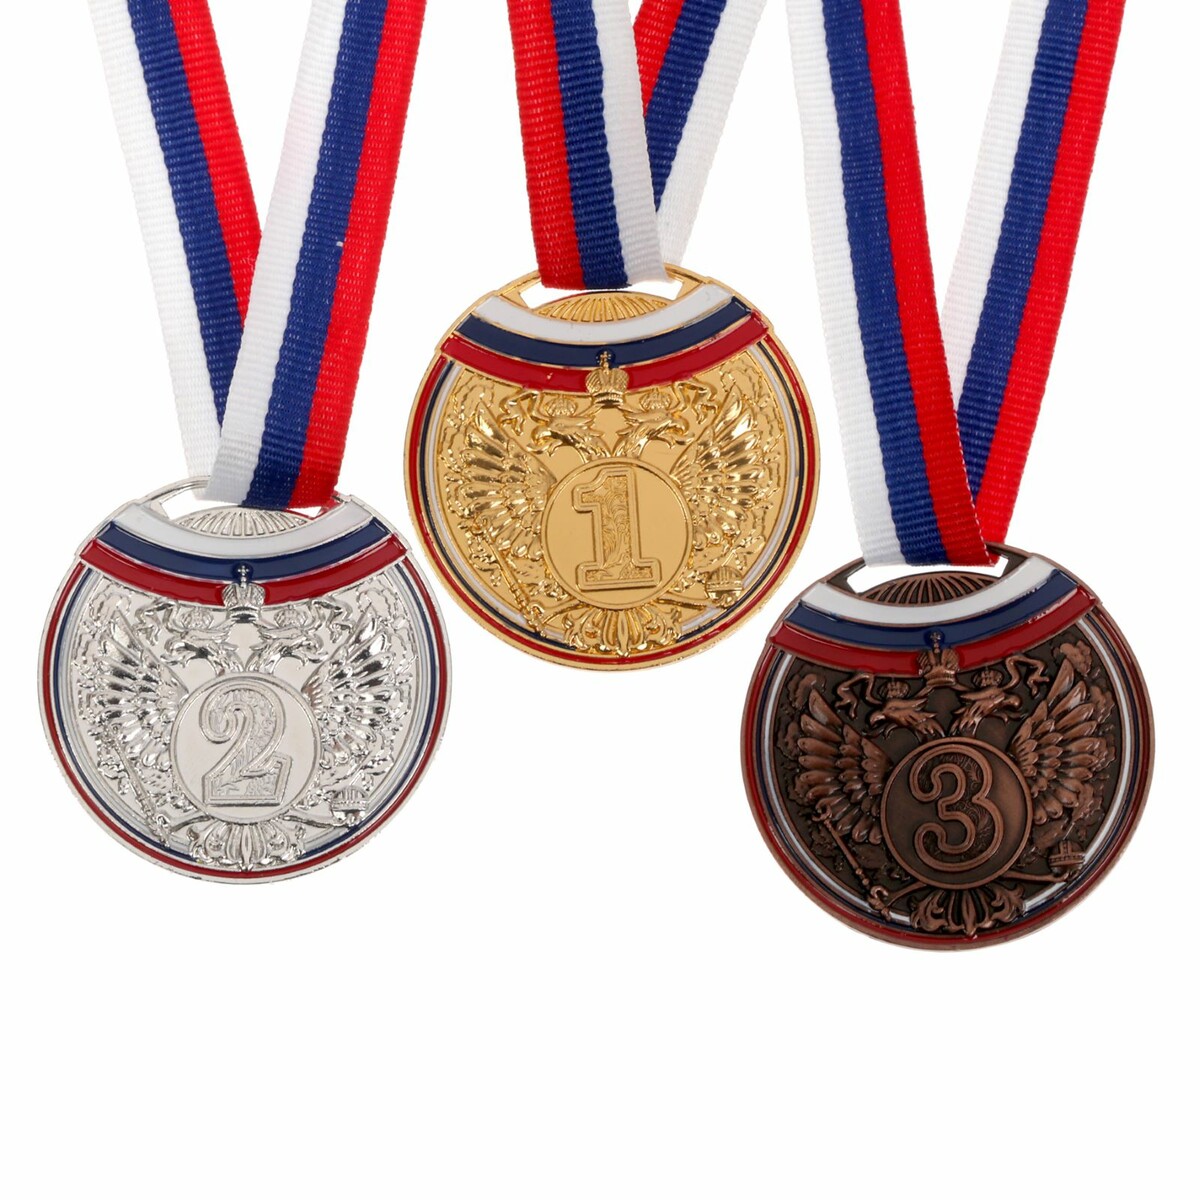 Медаль призовая 054 диам 5 см. 3 место, триколор. цвет бронз. с лентой медаль призовая 193 диам 3 5 см 3 место триколор бронз без ленты